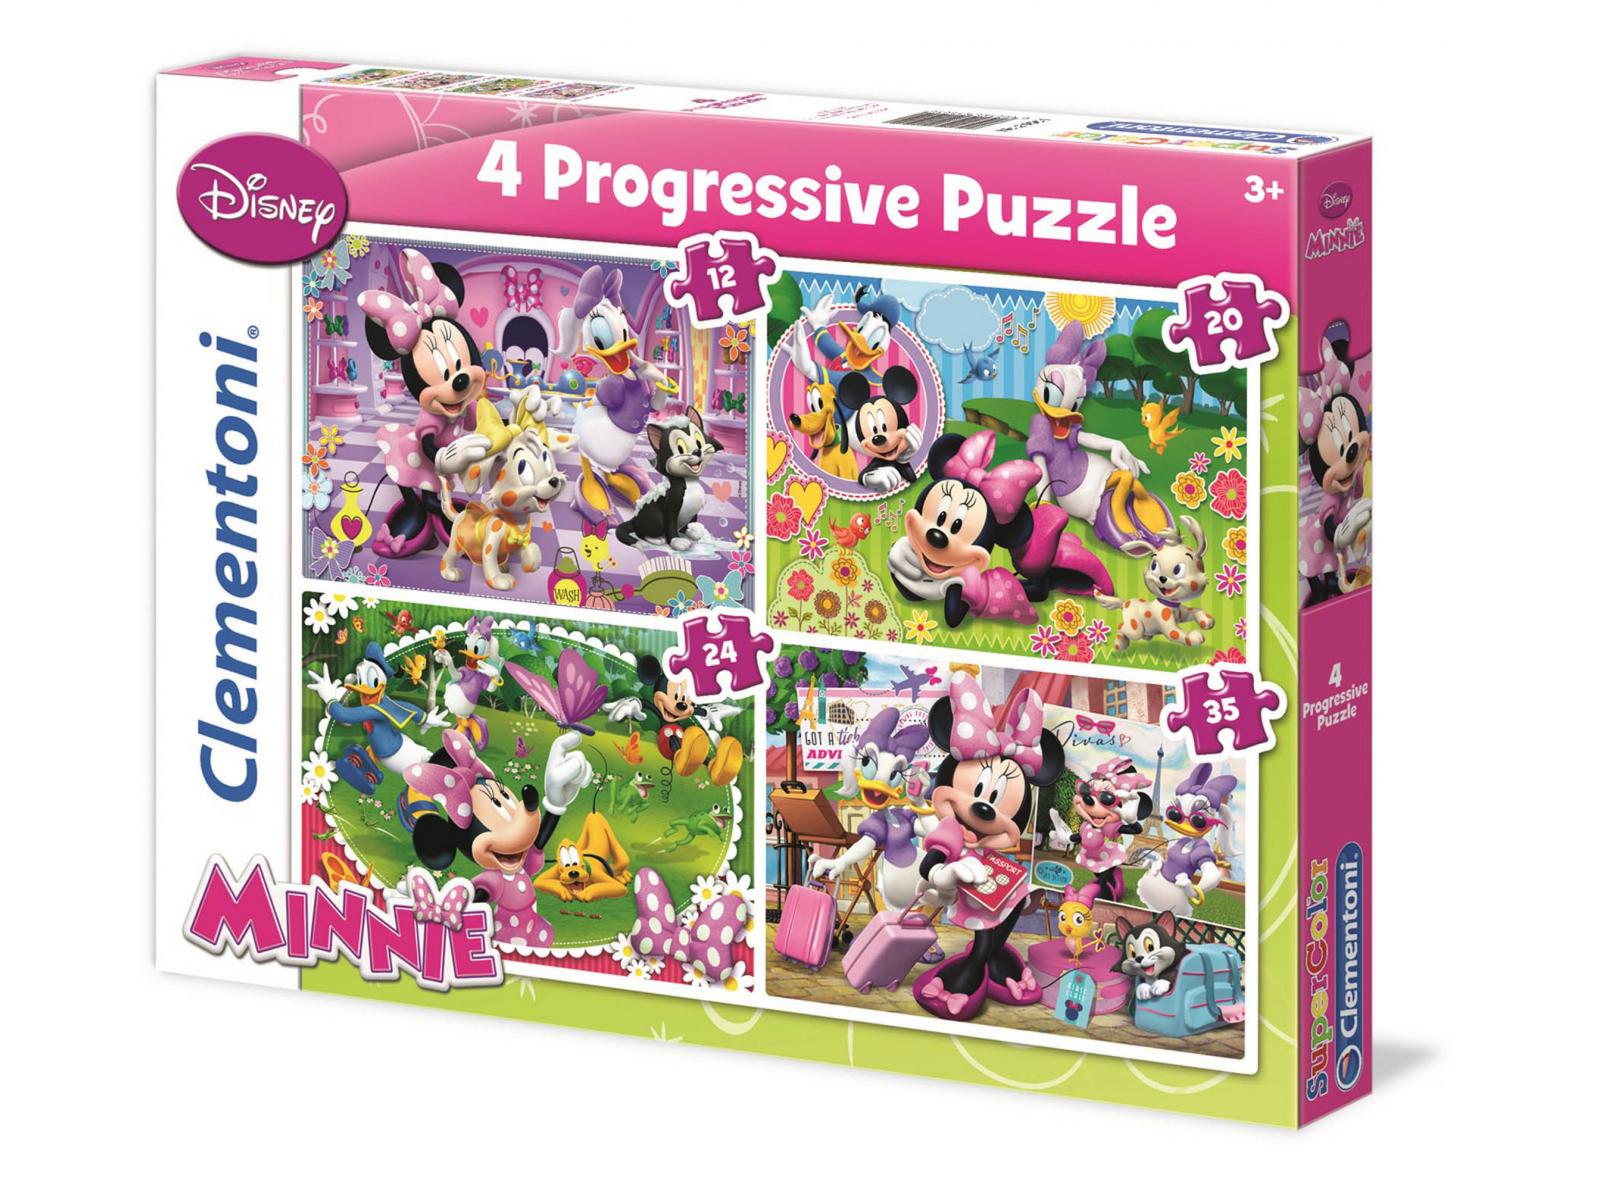 Clementoni - Puzzle progressive 4 en 1 12 + 20 + 24 + 35 pièces - Minnie